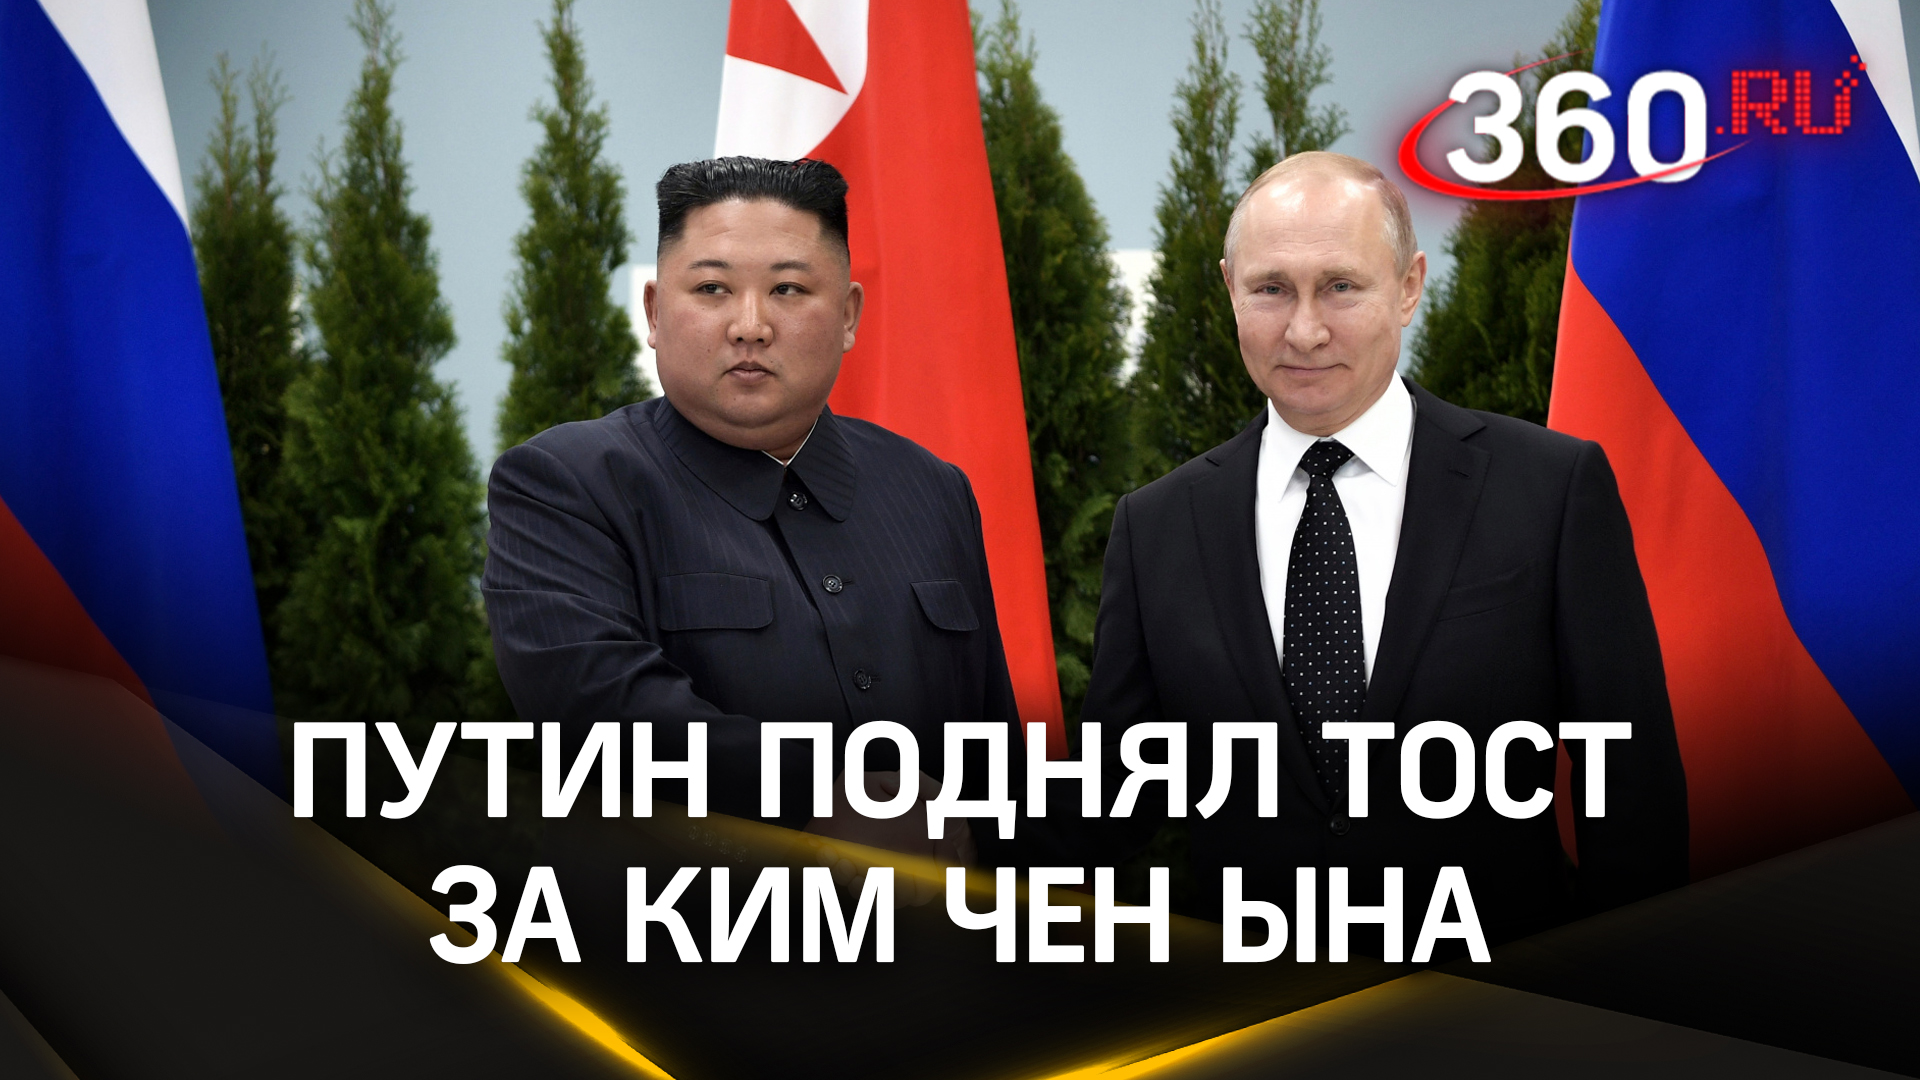 Близкий сосед лучше дальнего родственника - Путин поднял тост за Ким Чен Ына